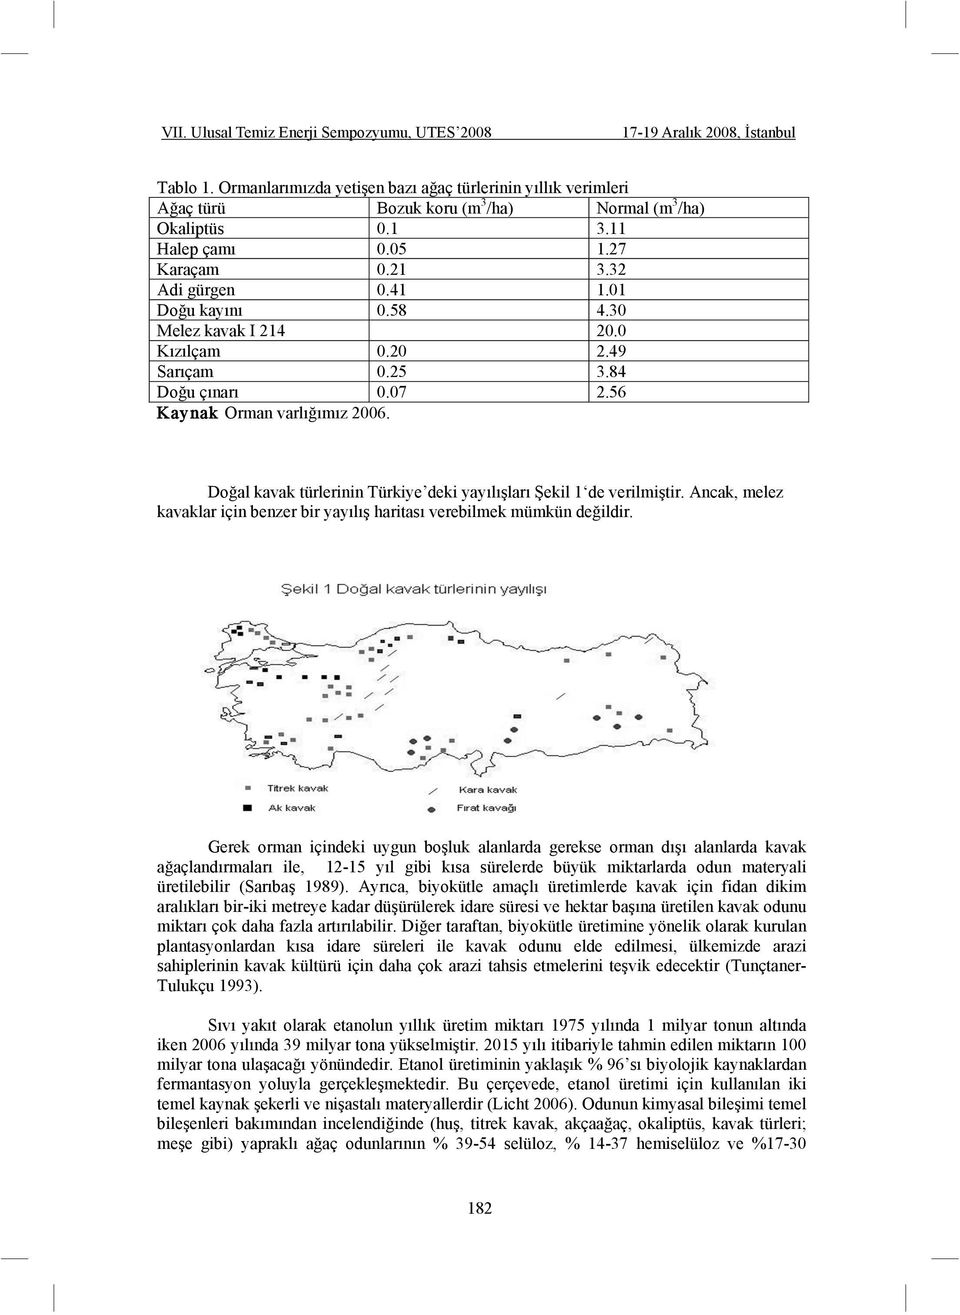 Do al kavak türlerinin Türkiye deki yayılı ları ekil 1 de verilmi tir. Ancak, melez kavaklar için benzer bir yayılı haritası verebilmek mümkün de ildir.